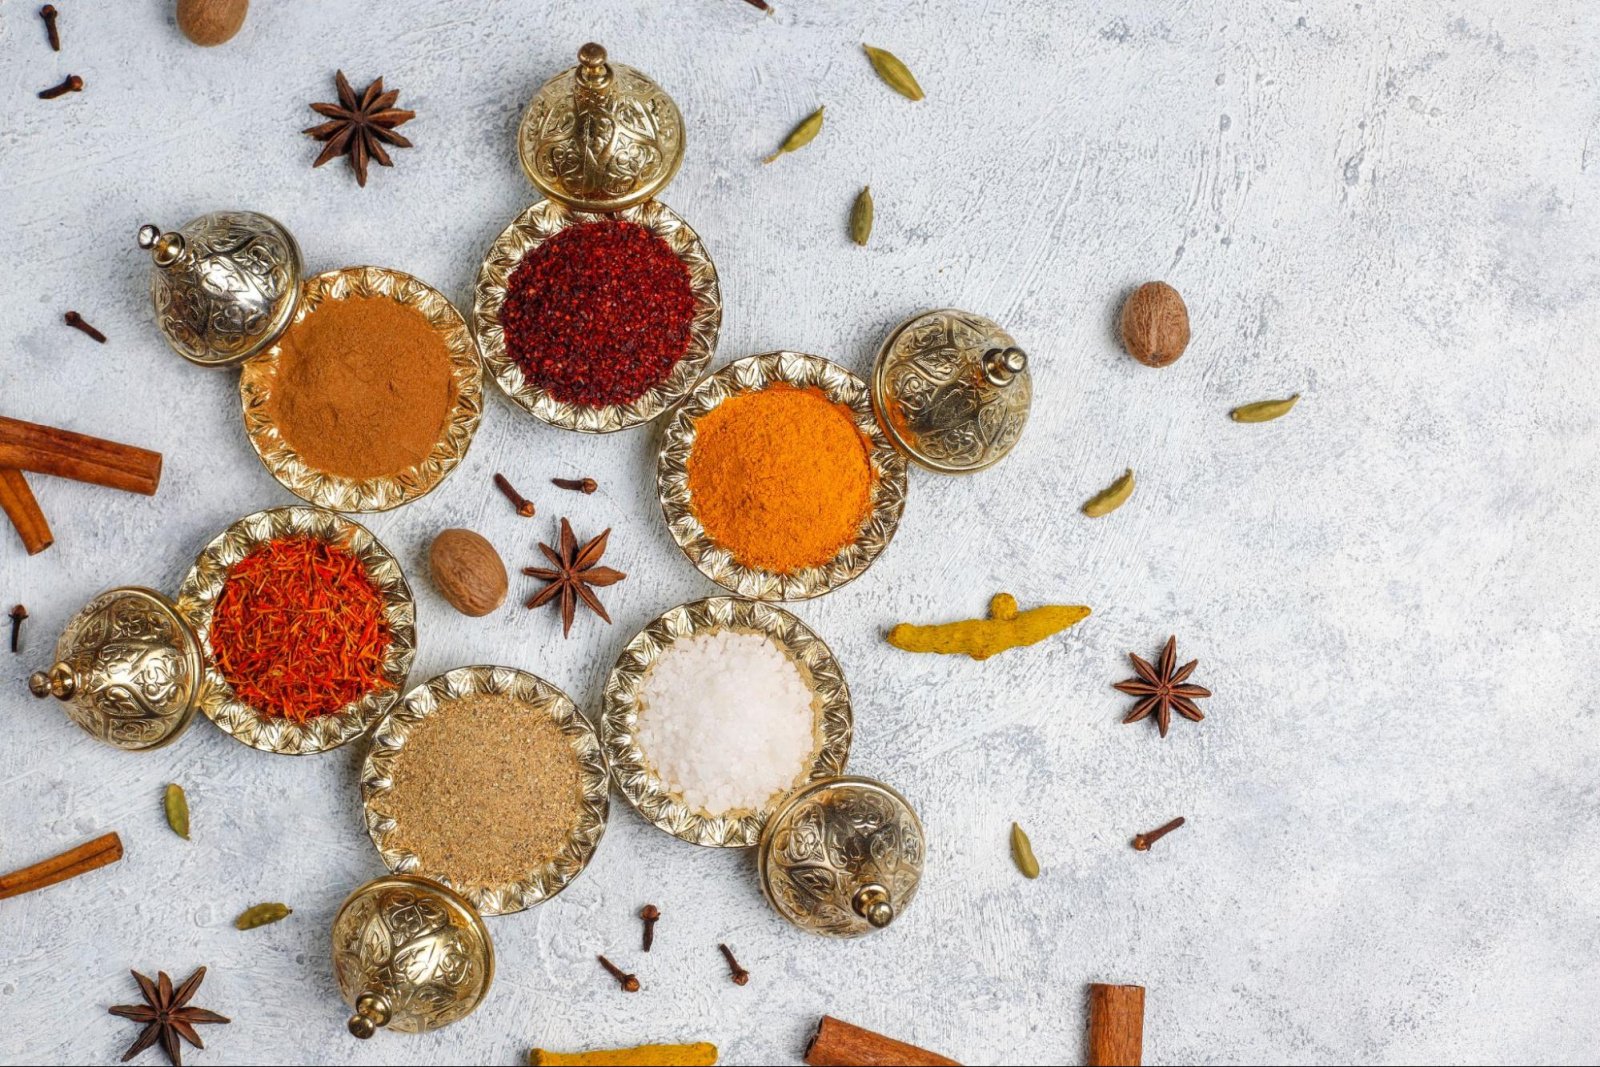 Чай масала: как приготовить индийский напиток с пряностями. Три рецепта для бодрости и хорошего настроения